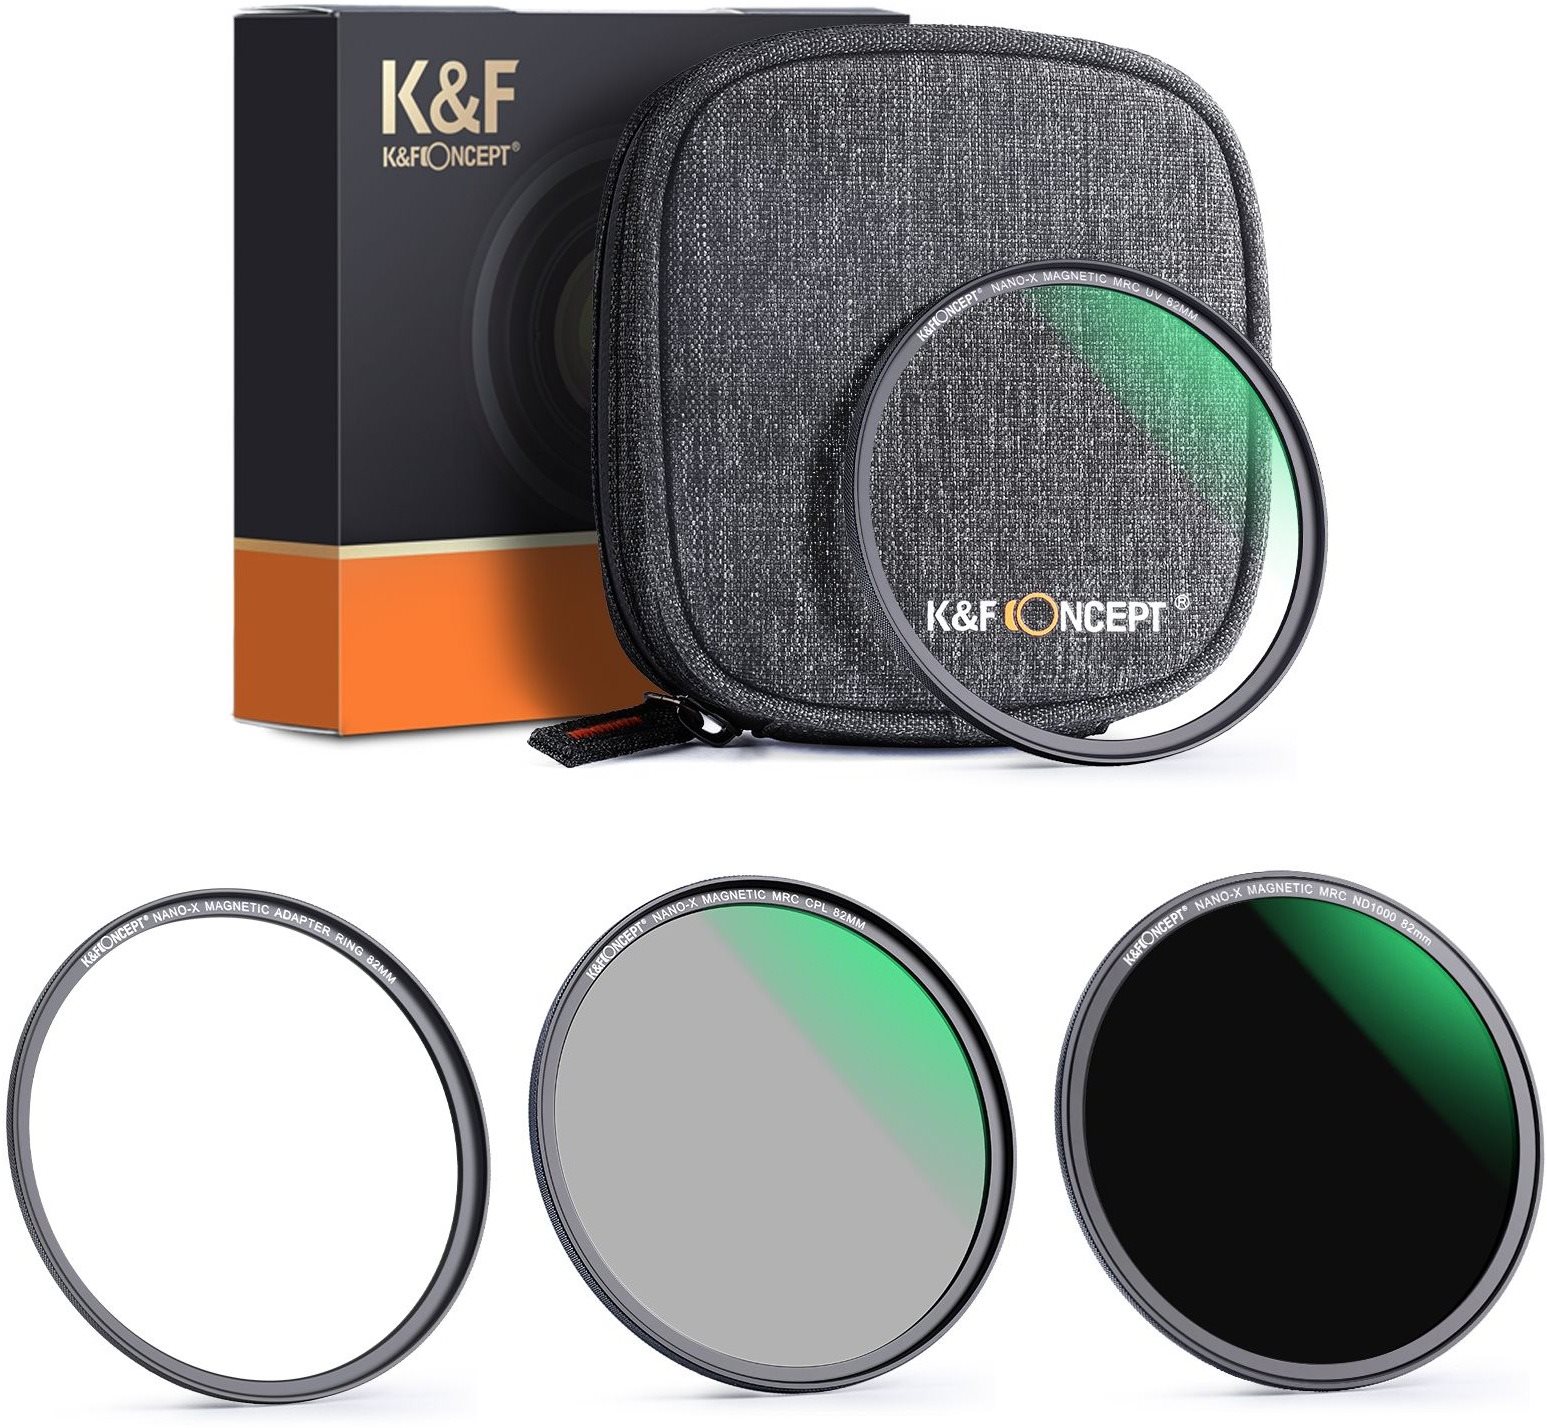 K&F Concept mágneses szűrőkészlet 3 db (MCUV, CPL, ND1000) - 52 mm